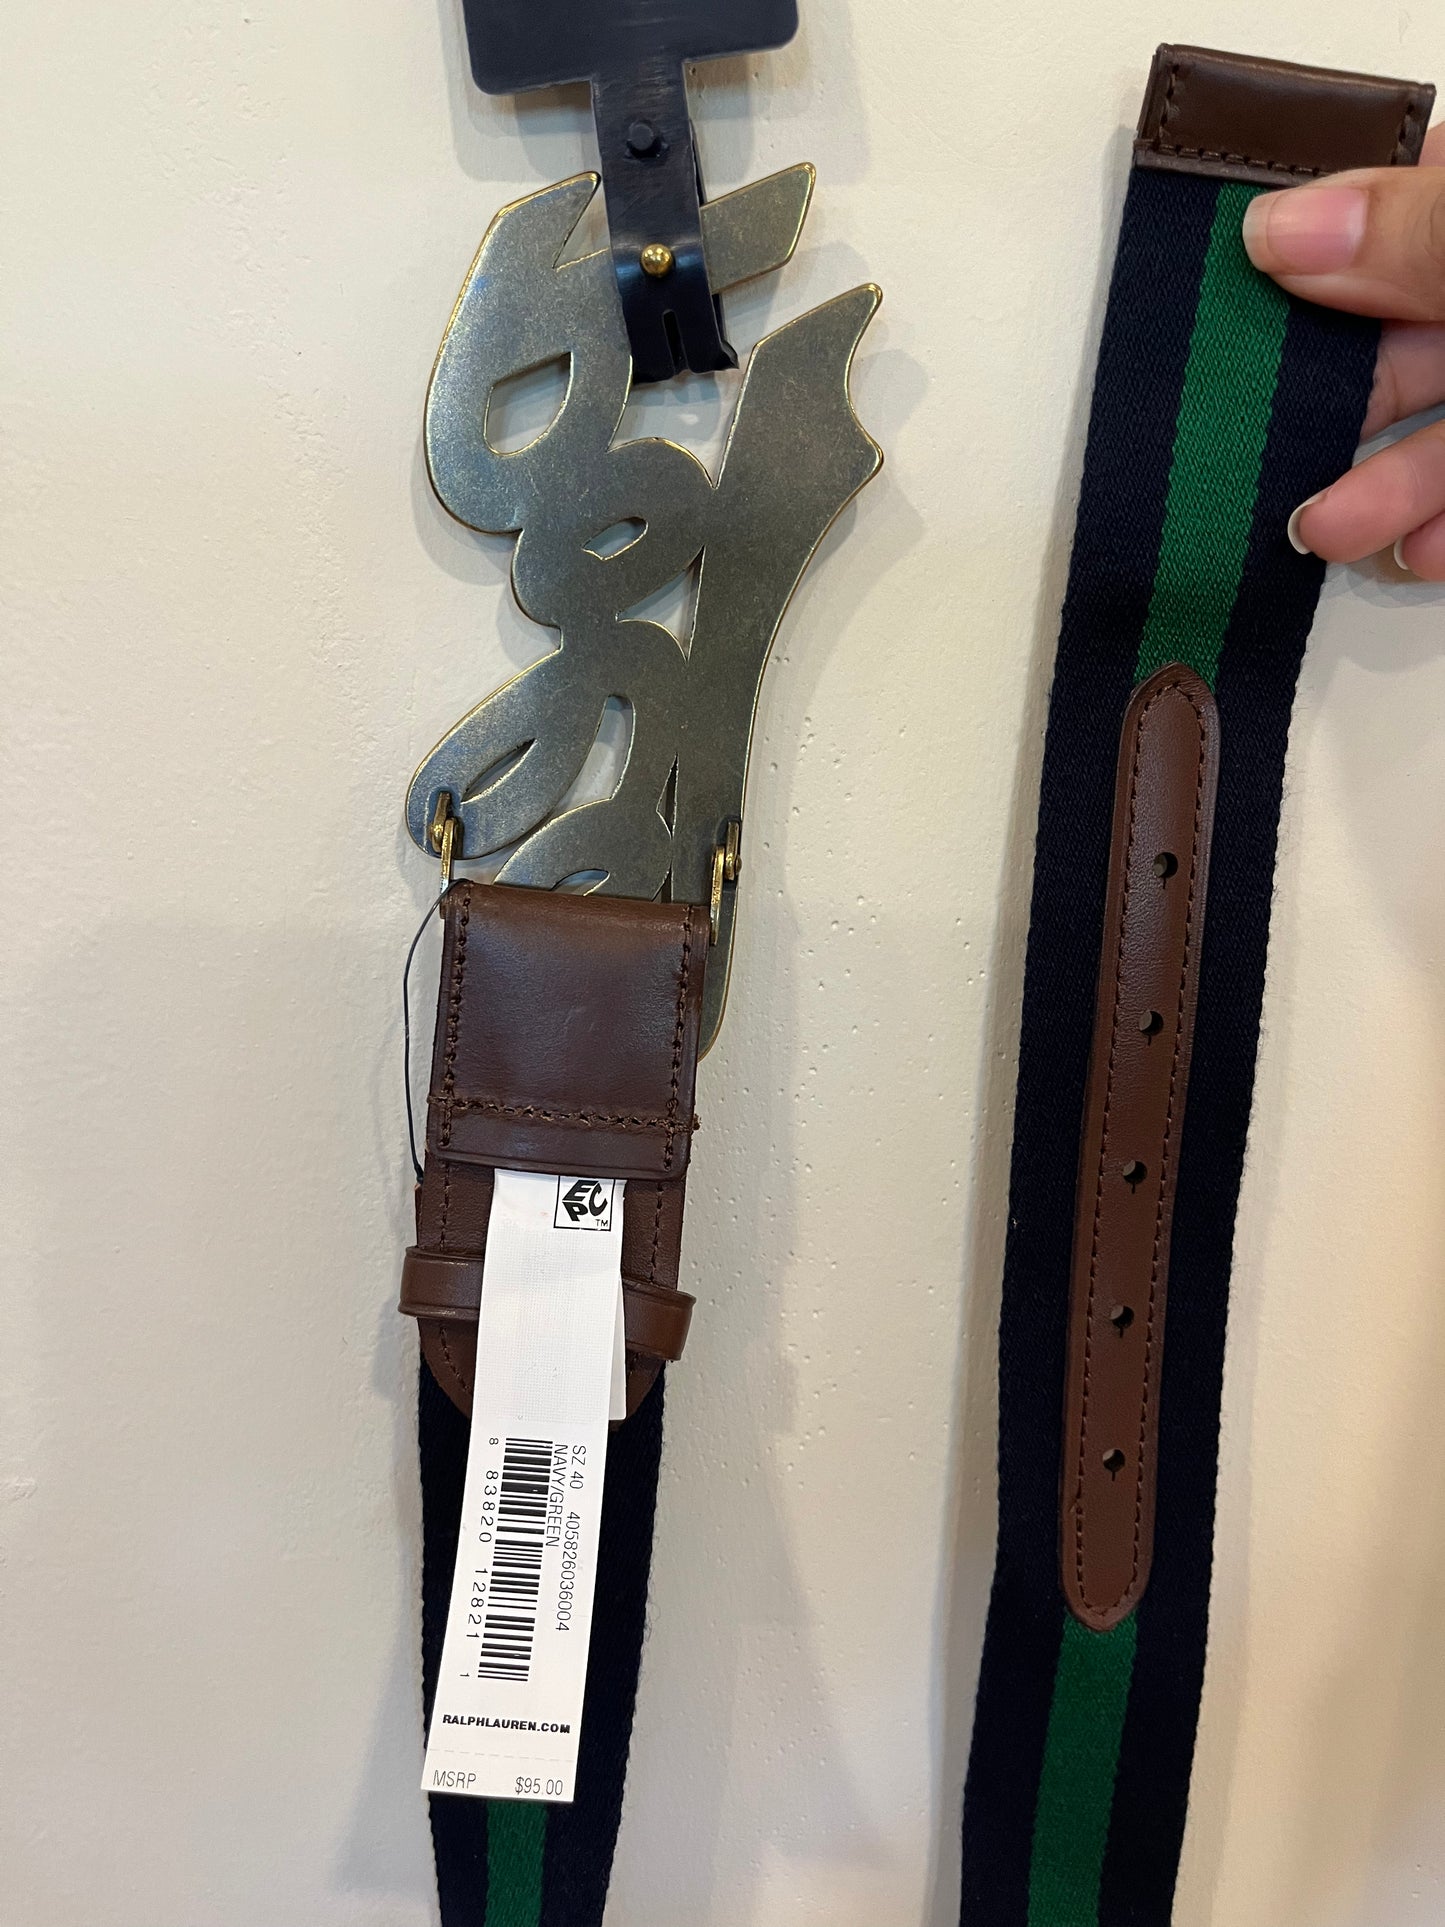 Polo Ralph Lauren Men’s Belt